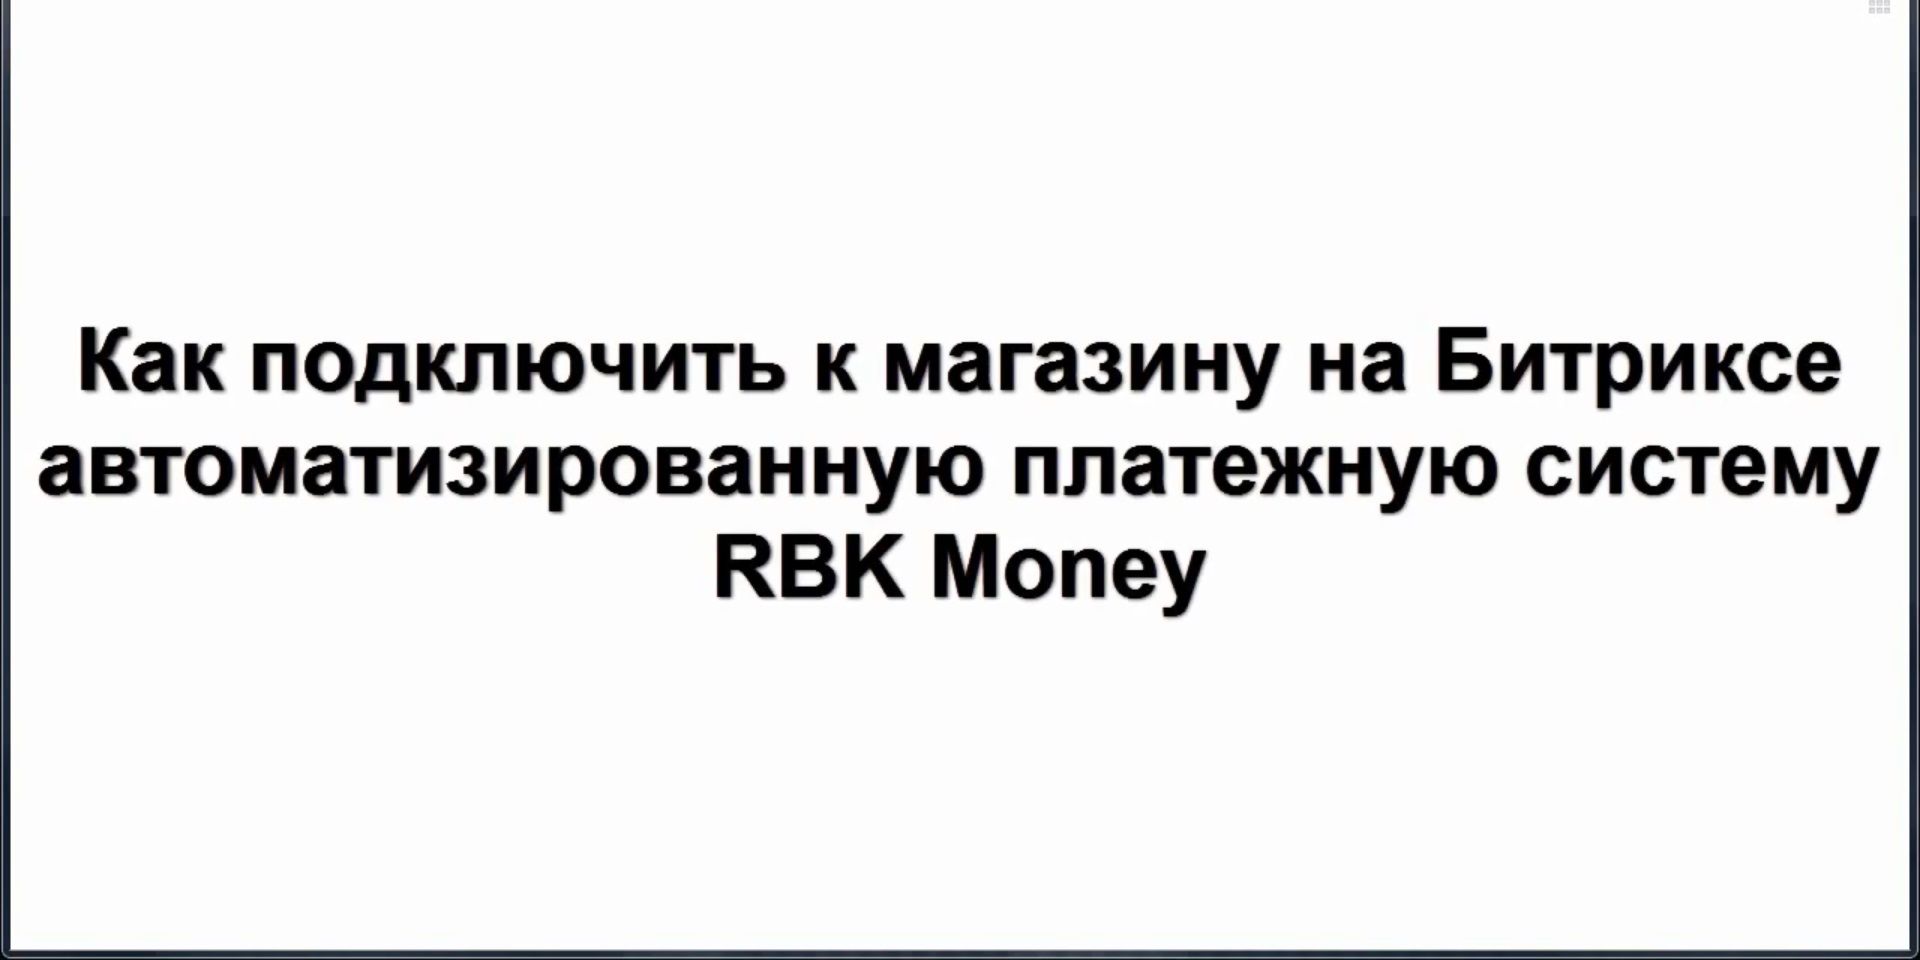 Урок 12 - Подключение к Битрикс платежной системы RBK Money (создание интернет-магазина с нуля)